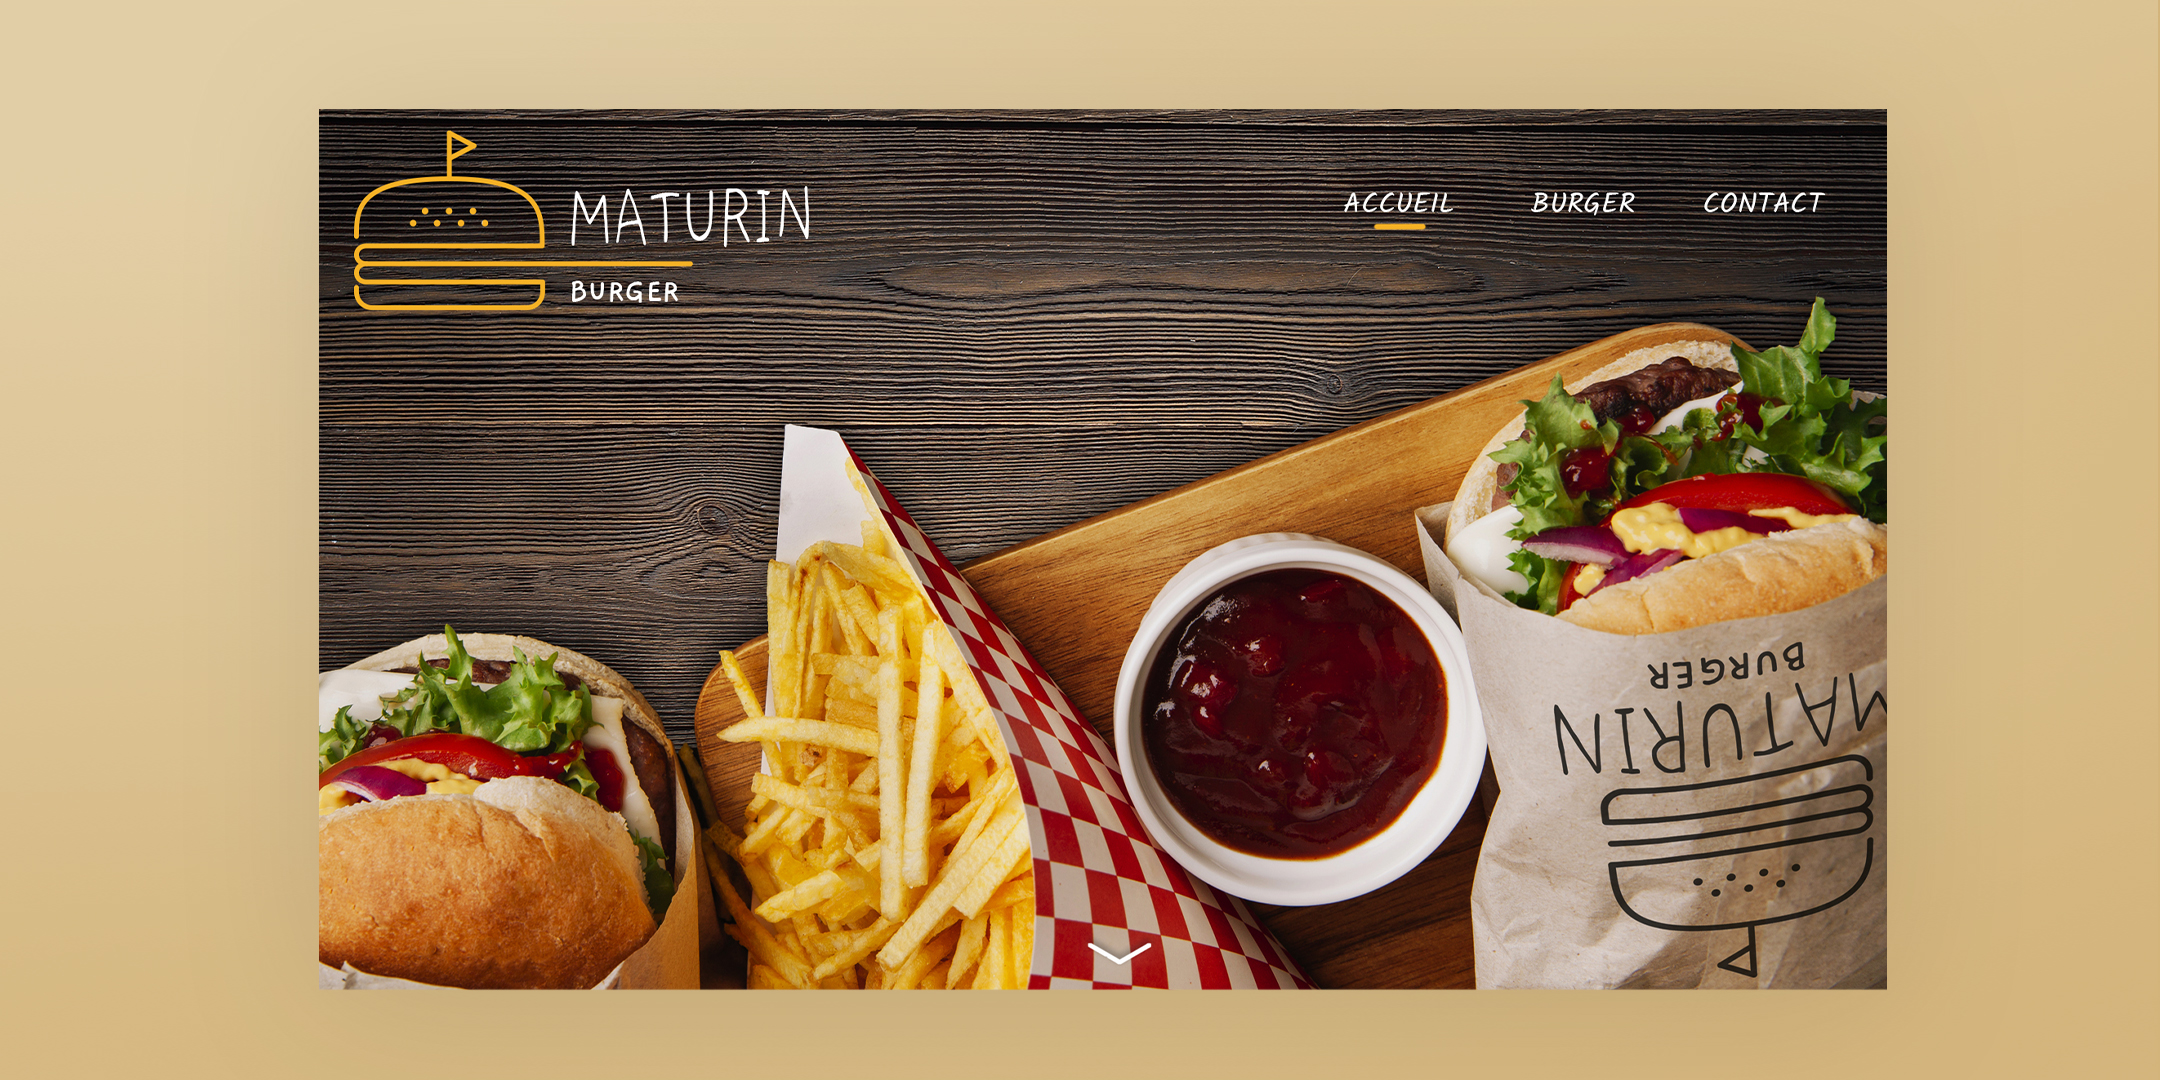 Maquette de la page daccueil du site internet Maturin Burger sur ordinateur. Le logo en haut à gauche est en jaune et blanc, la barre de navigation est en haut à droite, le nom des pages est écrit en blanc avec soulignage jaune pour marquer la page active. L'image de fond est une photo d'un menu du Maturin Burger sur planche de bois.